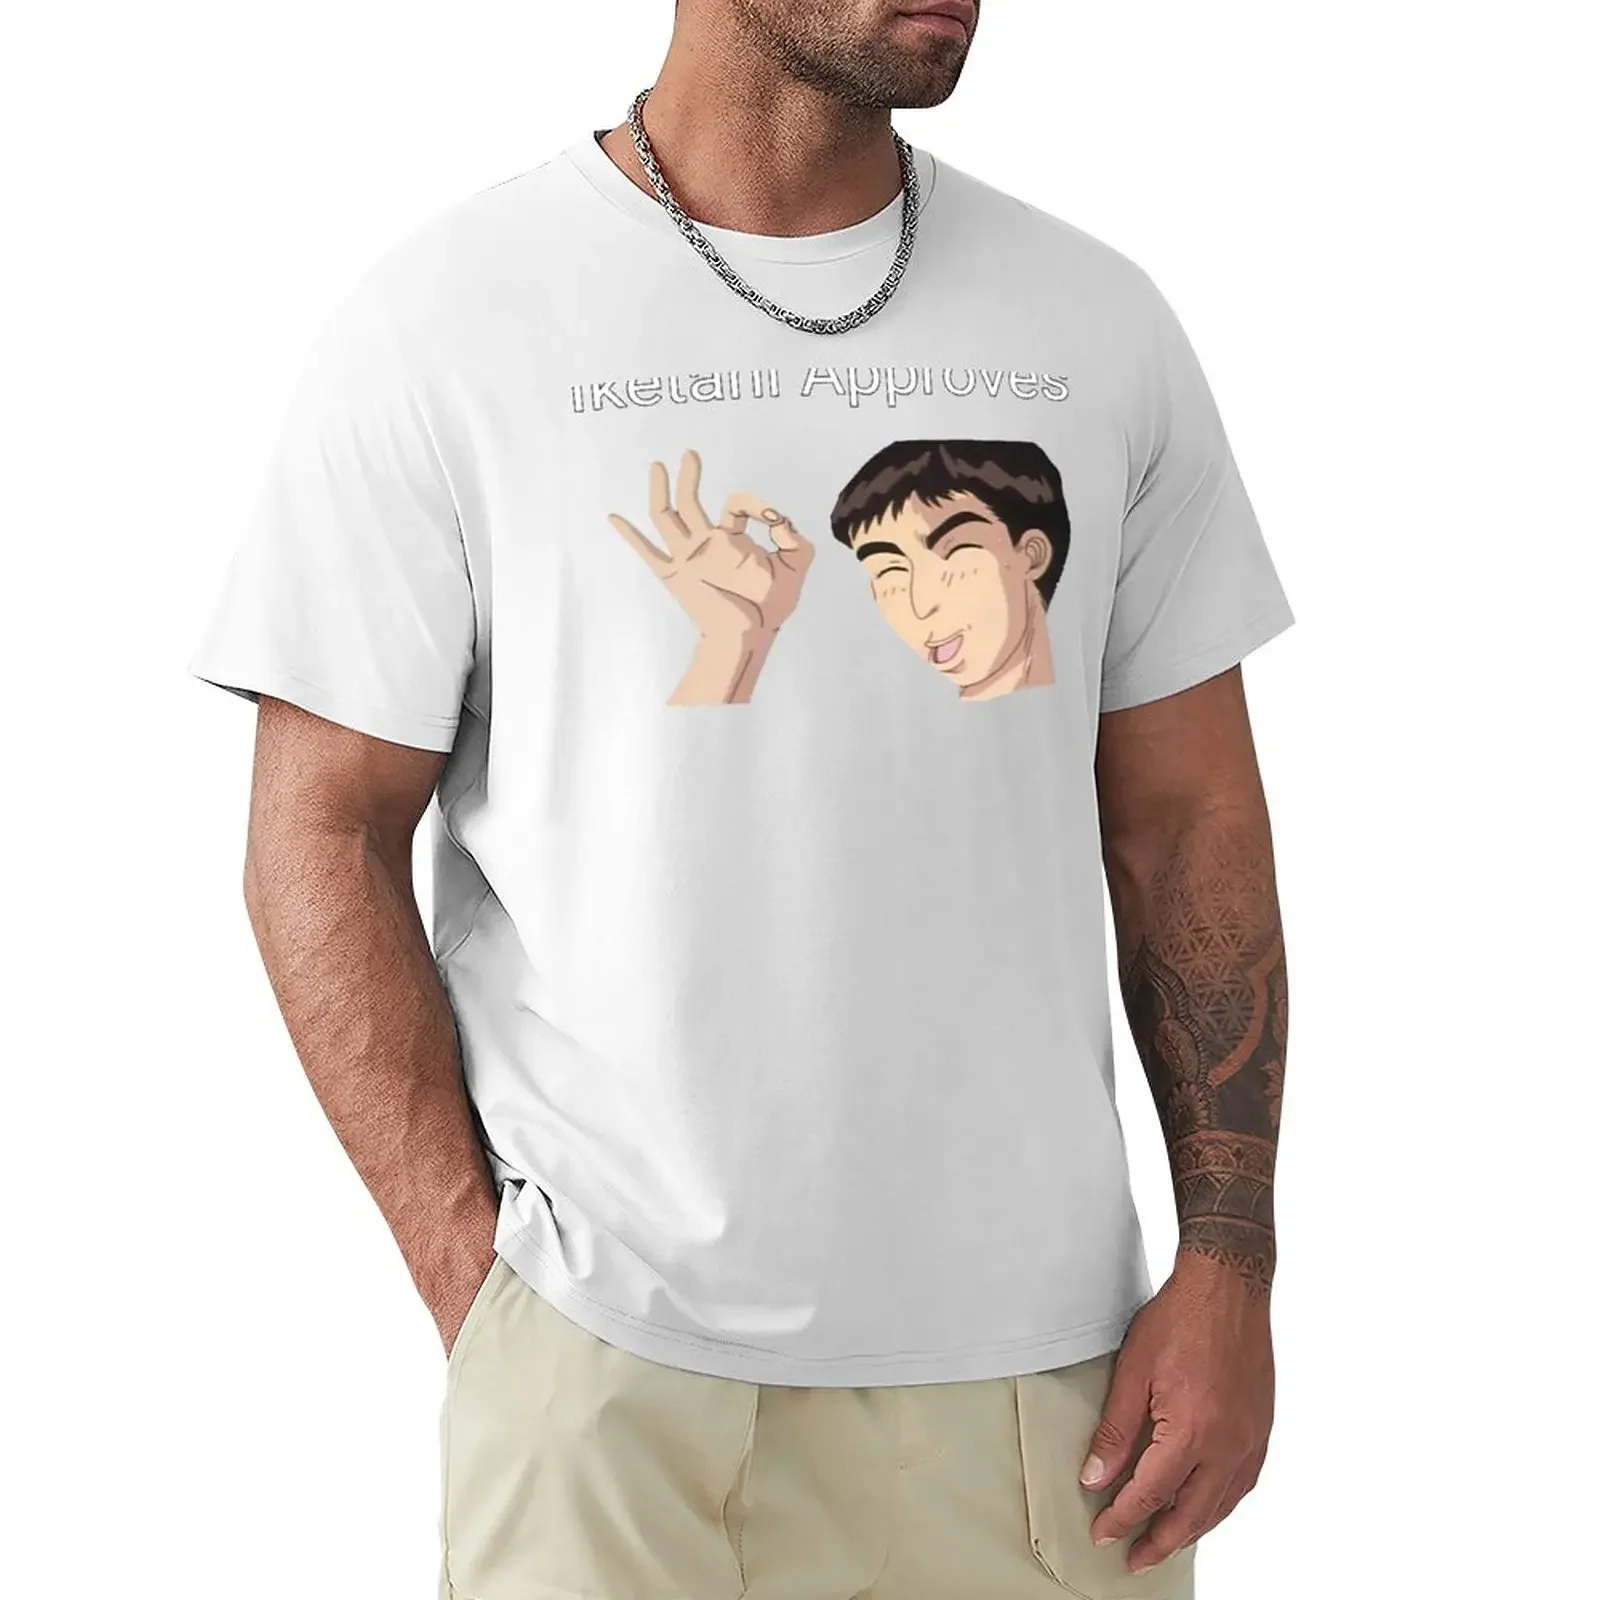 

Iketani Approves Ok Initial D Meme T-Shirt graphics quick-drying blacks black t shirts for men funnys quick drying t shirt men